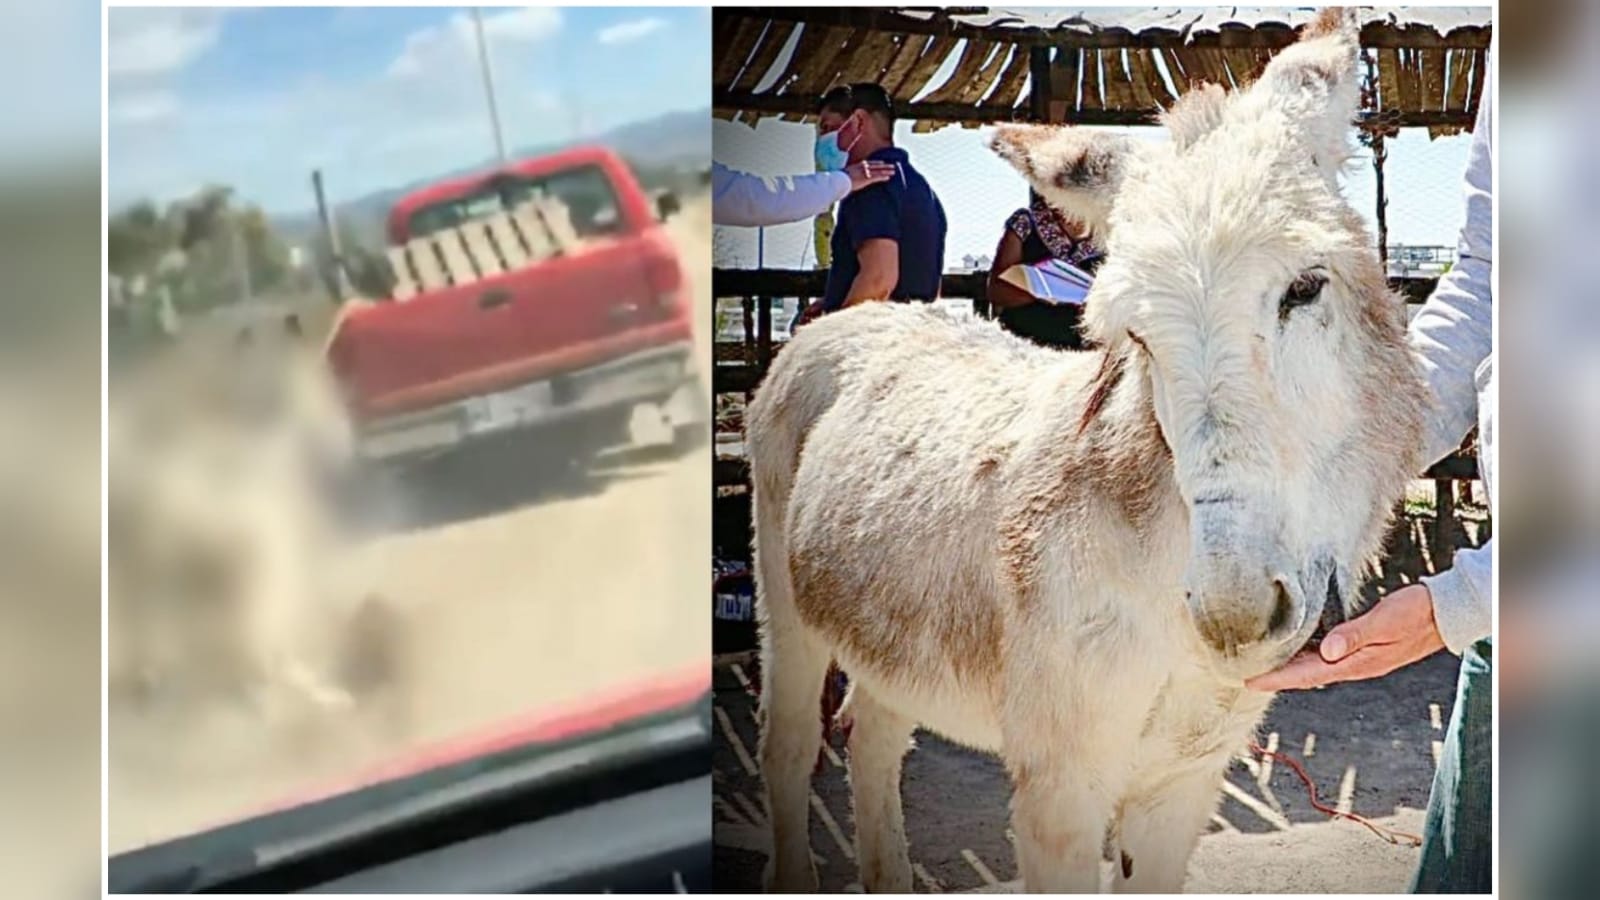 Rescatan a burro tras denuncias en redes sociales por maltrato animal | El Imparcial de Oaxaca